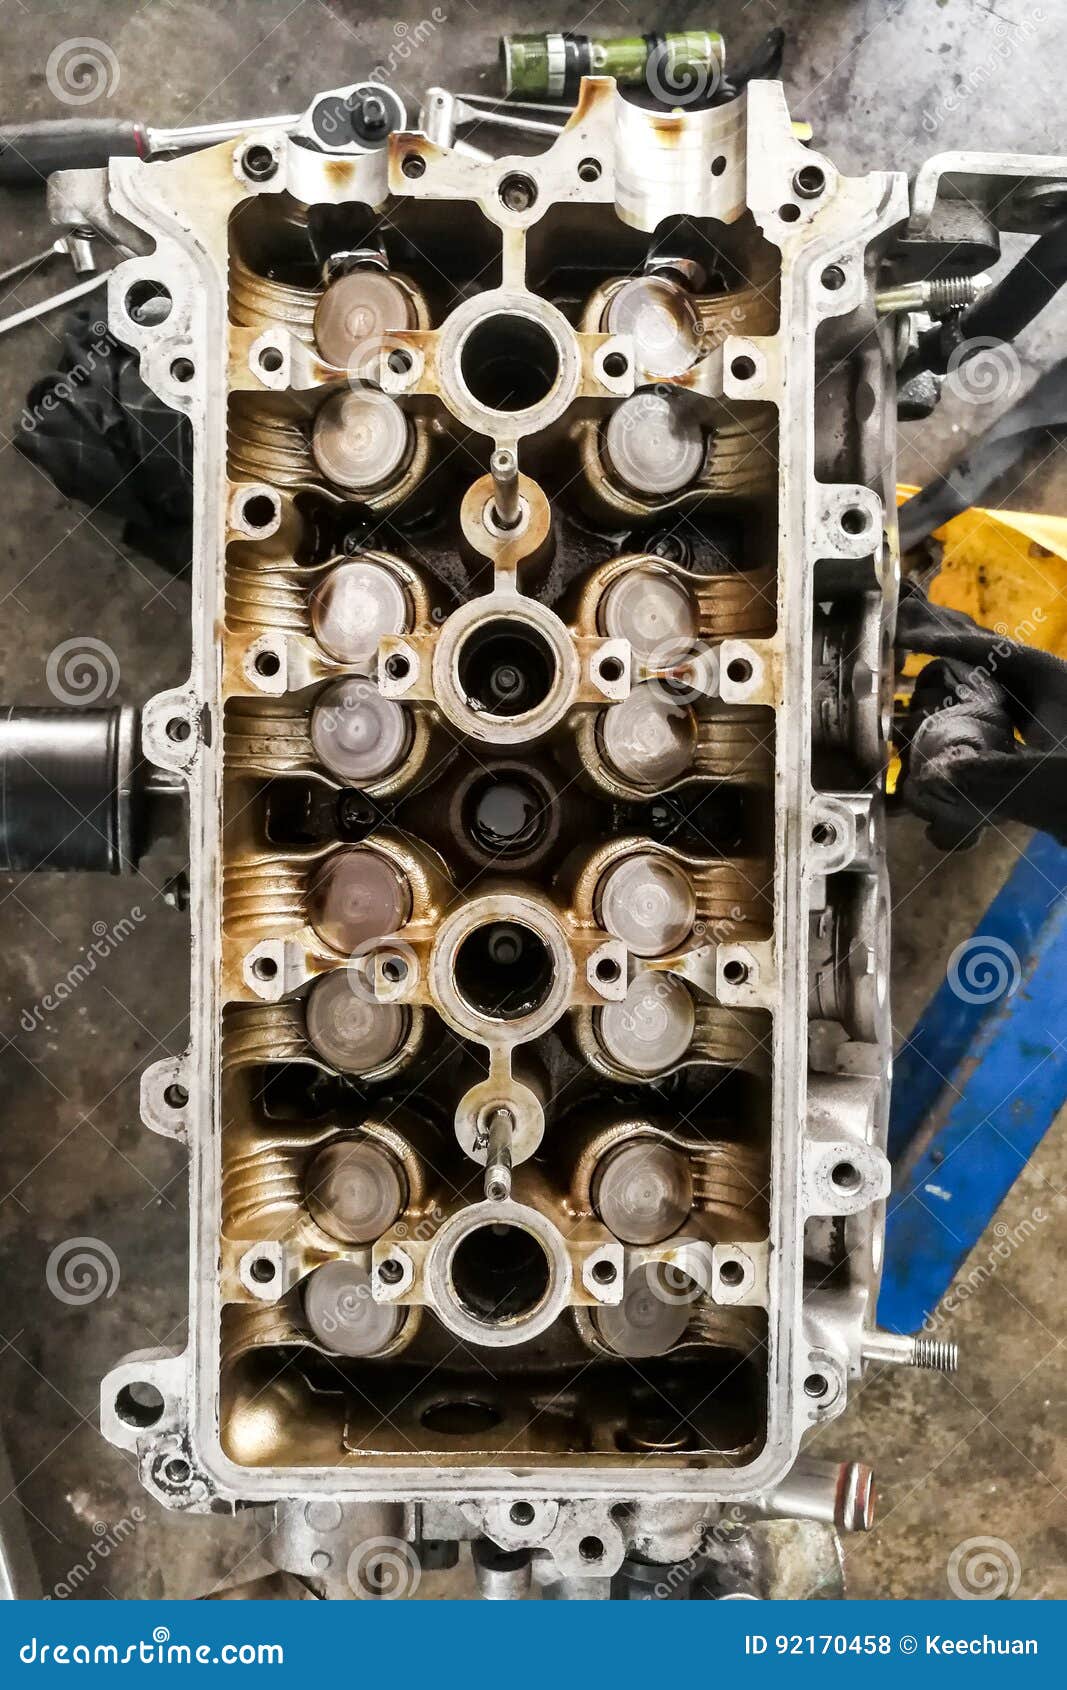 worn uto car engine valves being serviced at garage